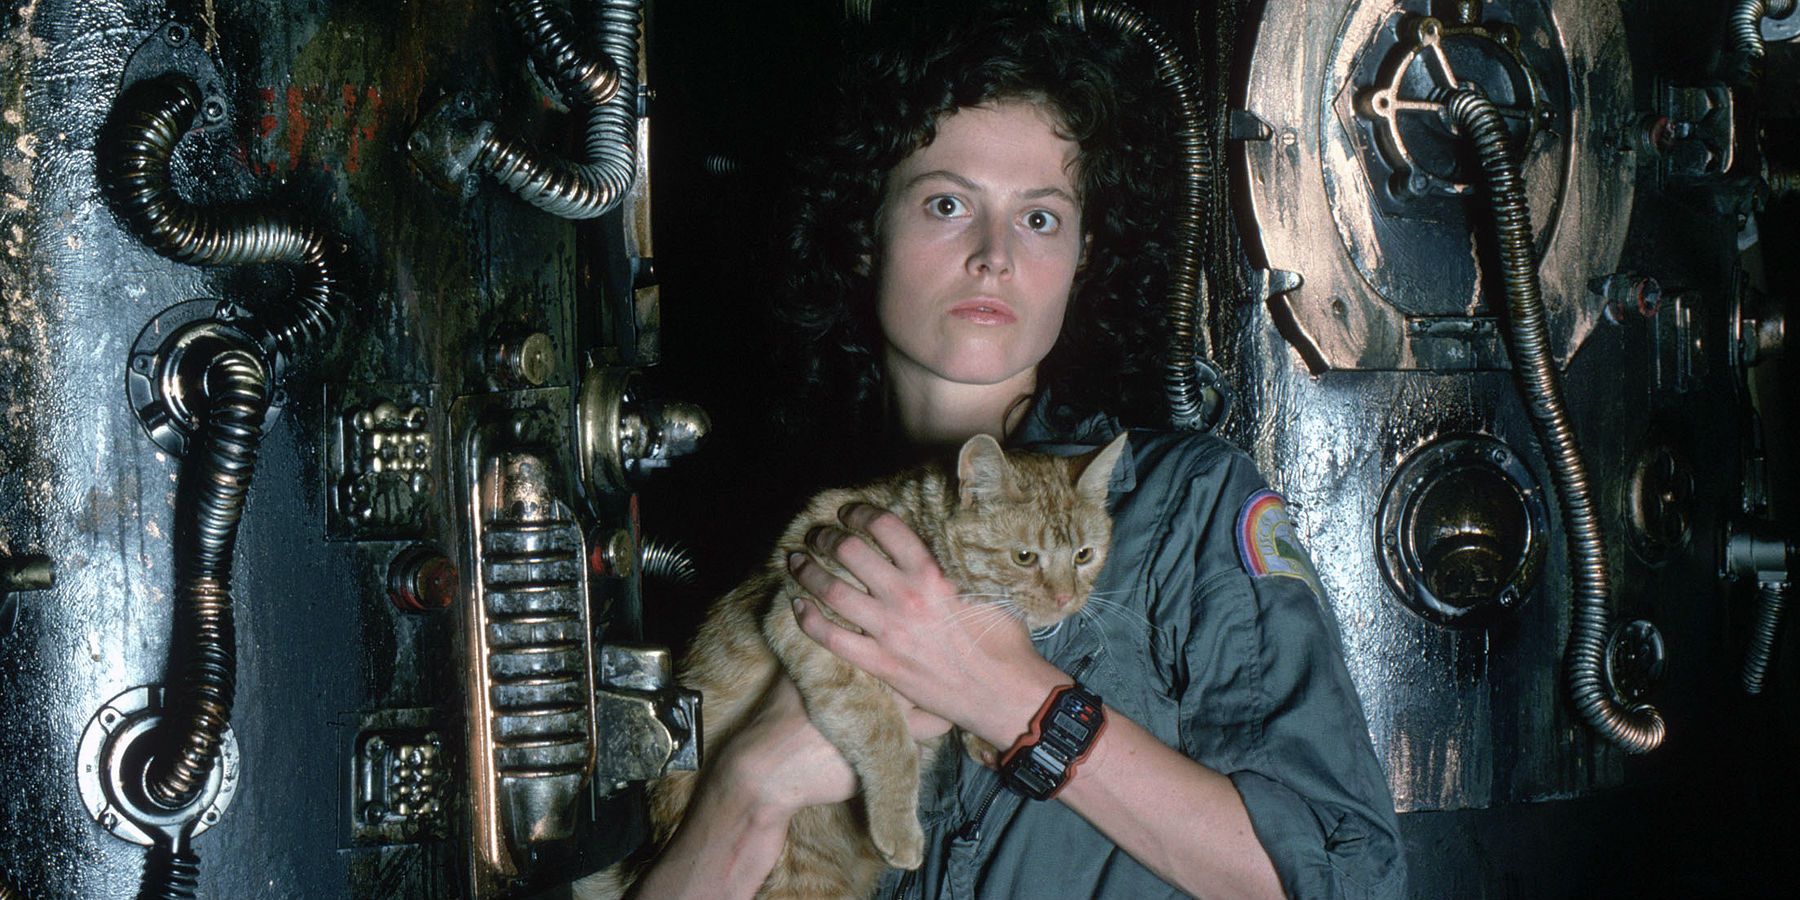 Ripley holding a cat in Alien